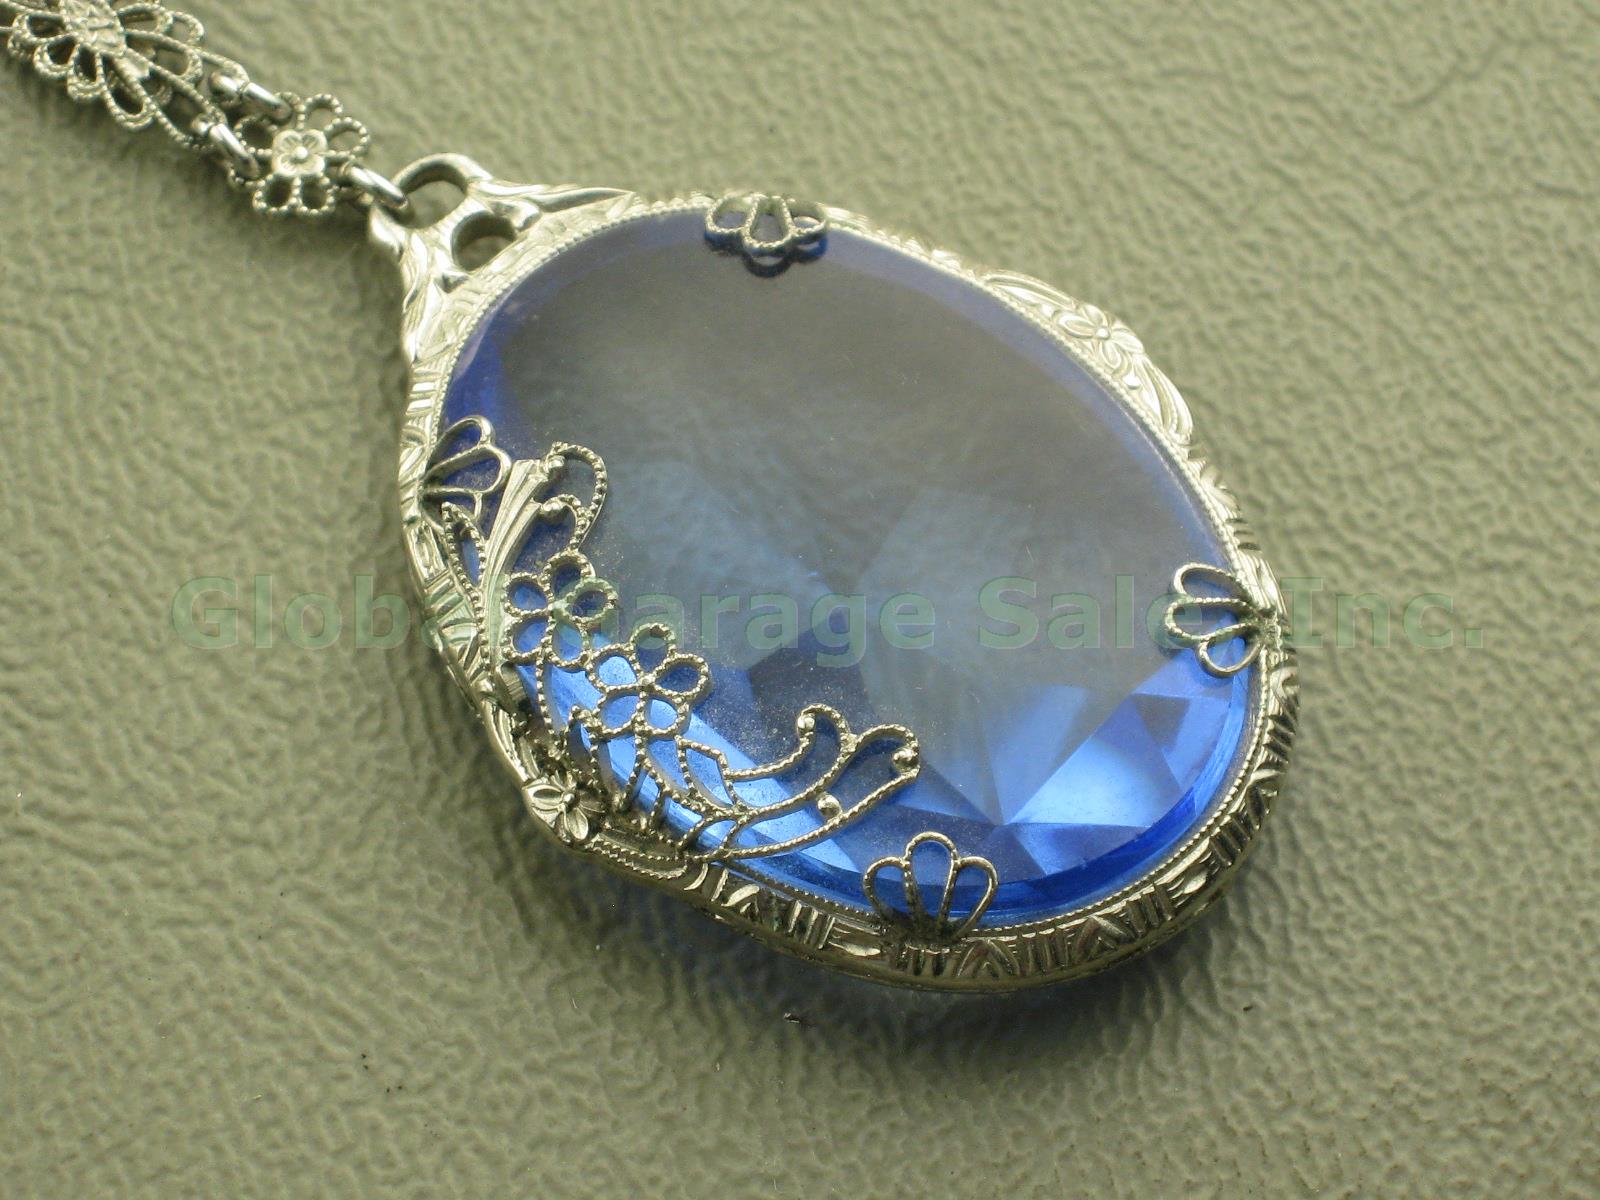 Vtg Antique JHP JH Peckham Art Deco Filigree Blue Glass Pendant Chain Necklace 1